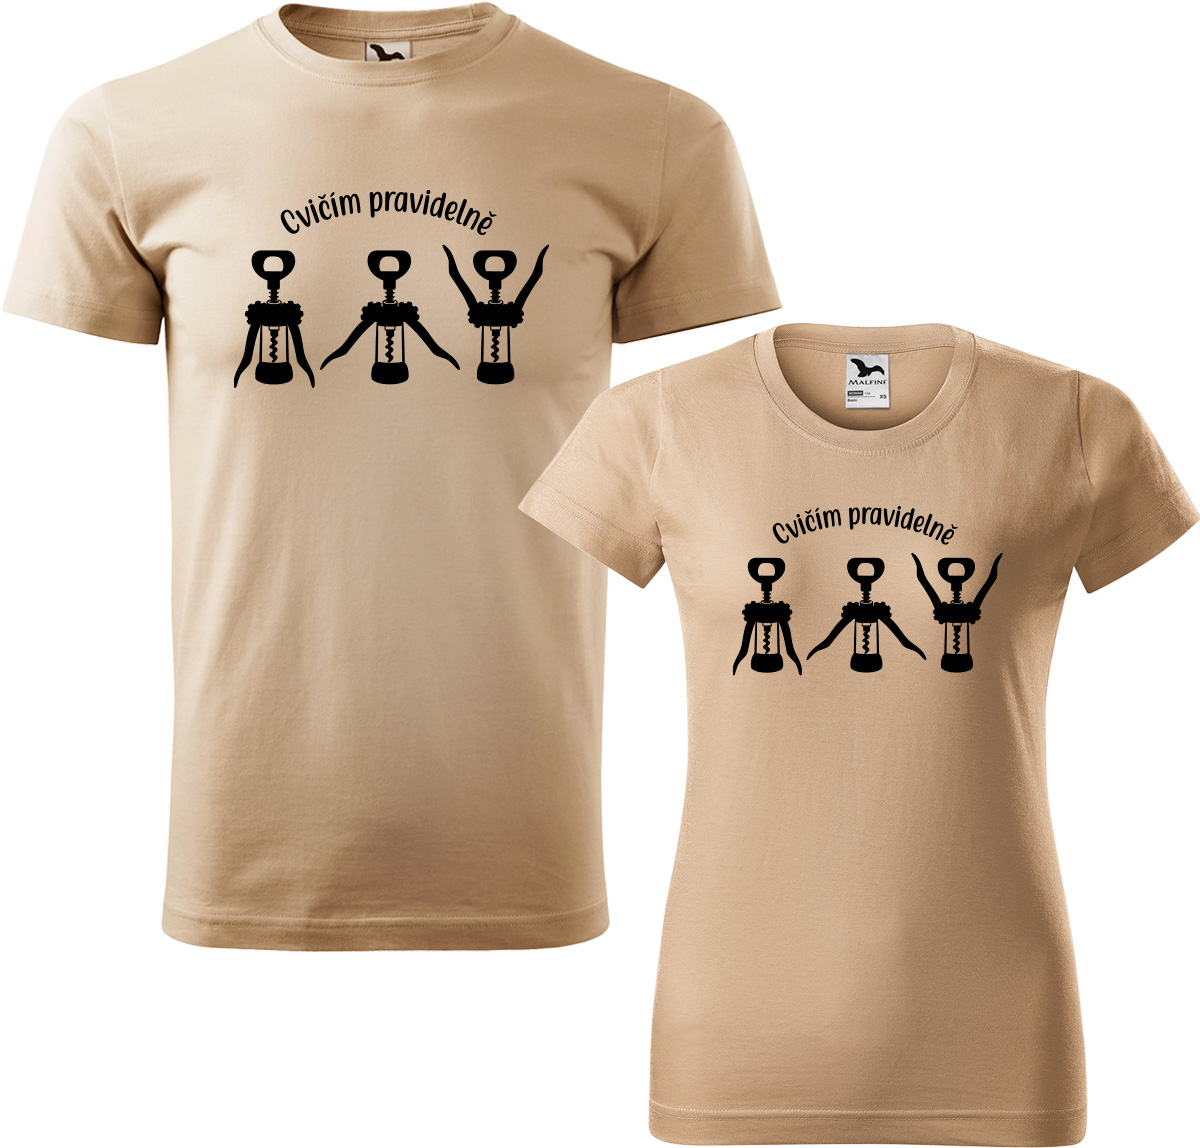 Trička pro páry - Cvičím pravidelně Barva: Písková (08), Velikost dámské tričko: XL, Velikost pánské tričko: XL